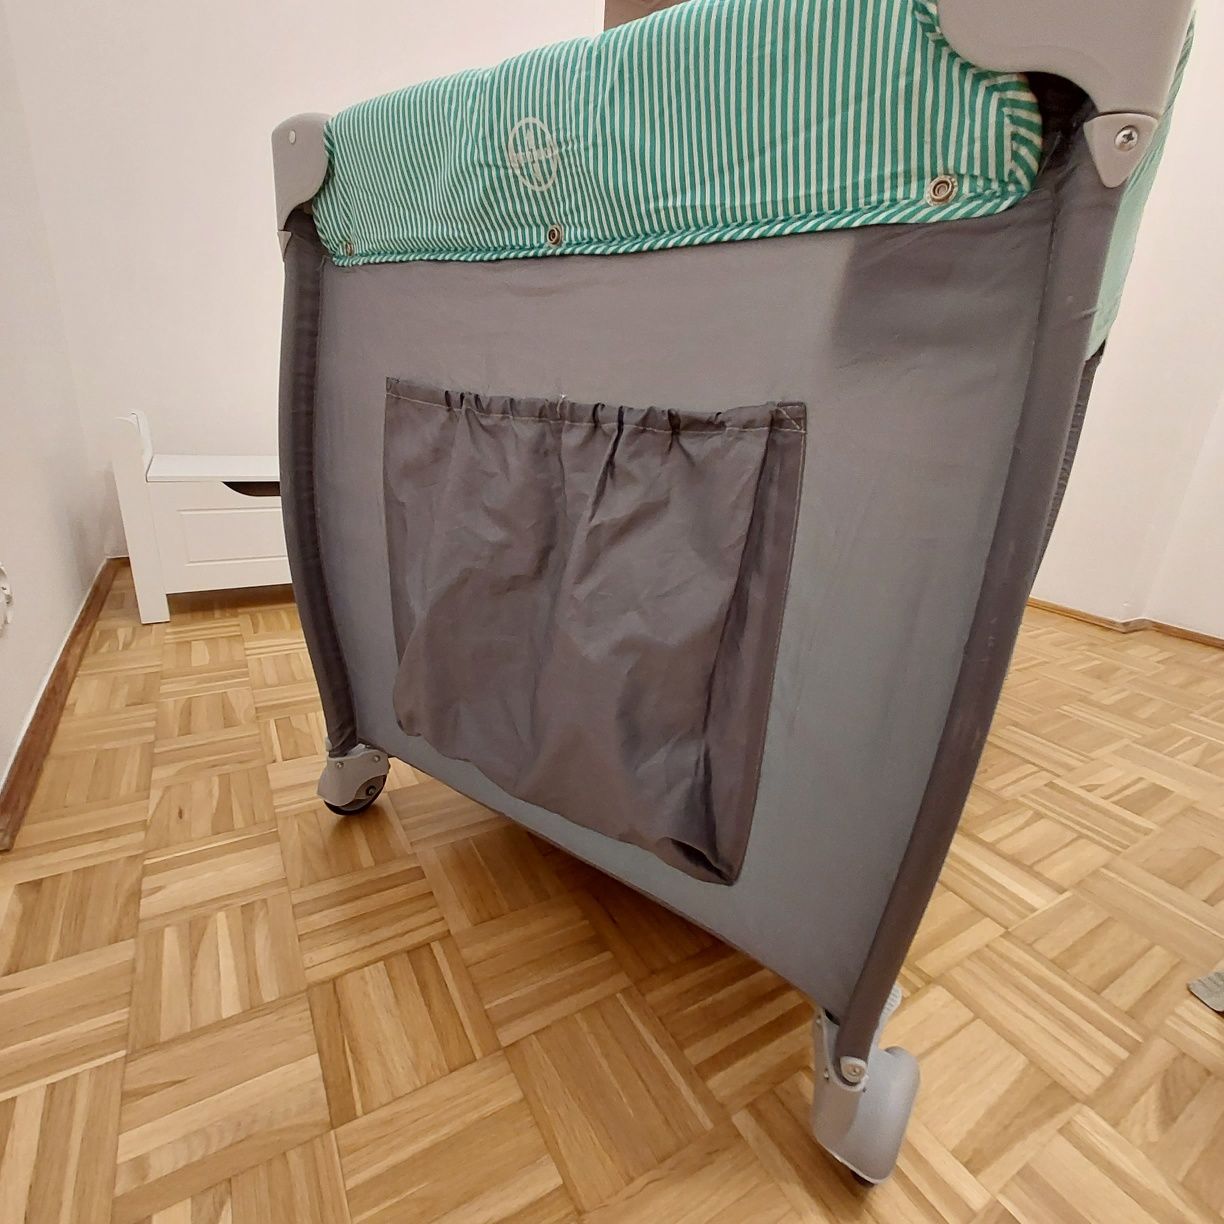 Lionelo, dwupoziomowe łóżeczko turystyczne, składane z dodatkowym wypo